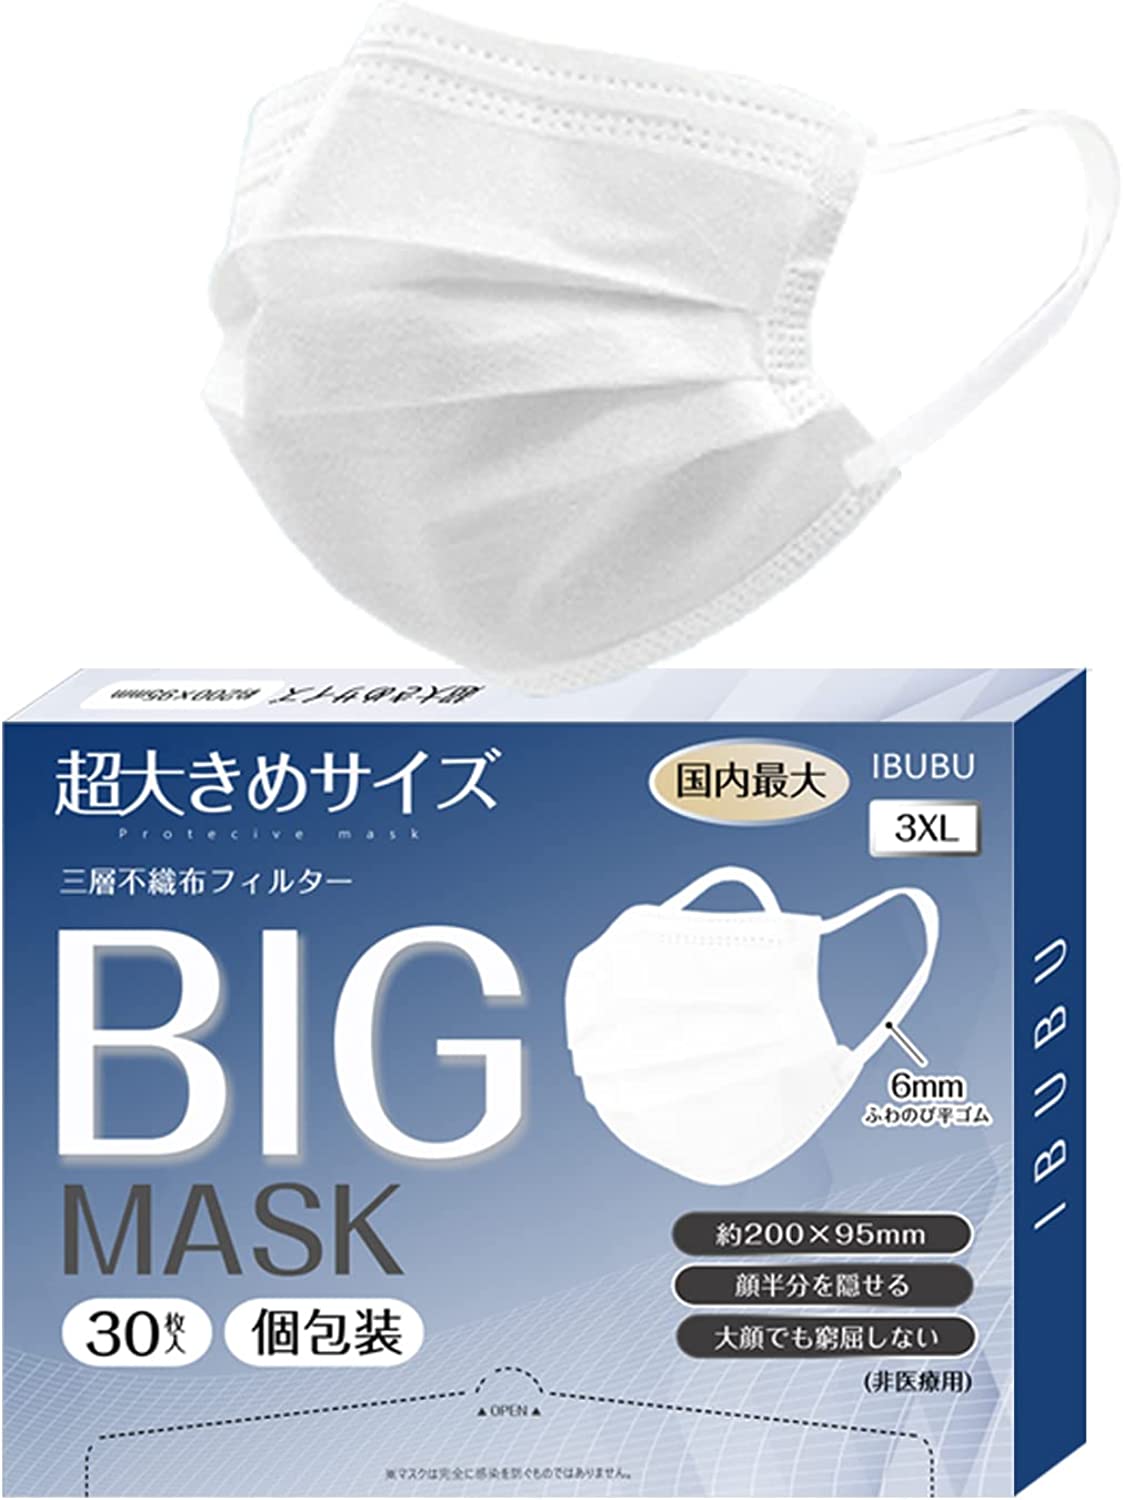 超大きい マスク 大きめ マスク 大きいサイズ 不織布 200mm メンズ ビッグサイズ マスク 使...